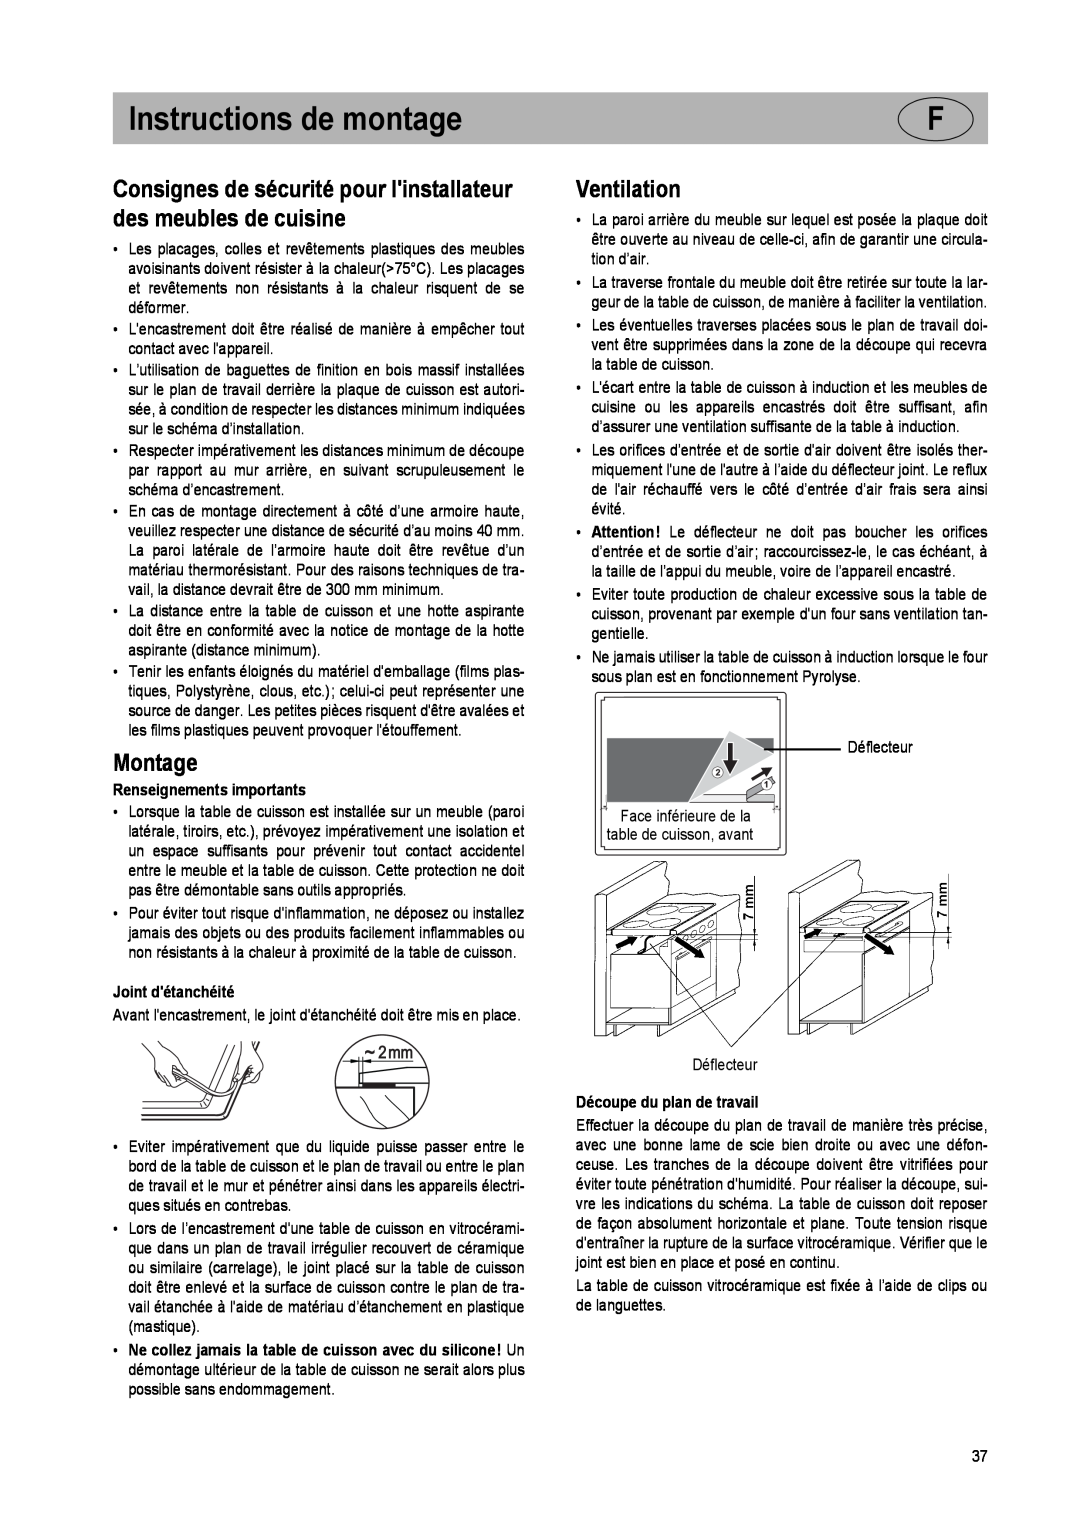 Smeg SE2951ID manual Instructions de montage, Montage, Ventilation, Renseignements importants, Joint détanchéité 